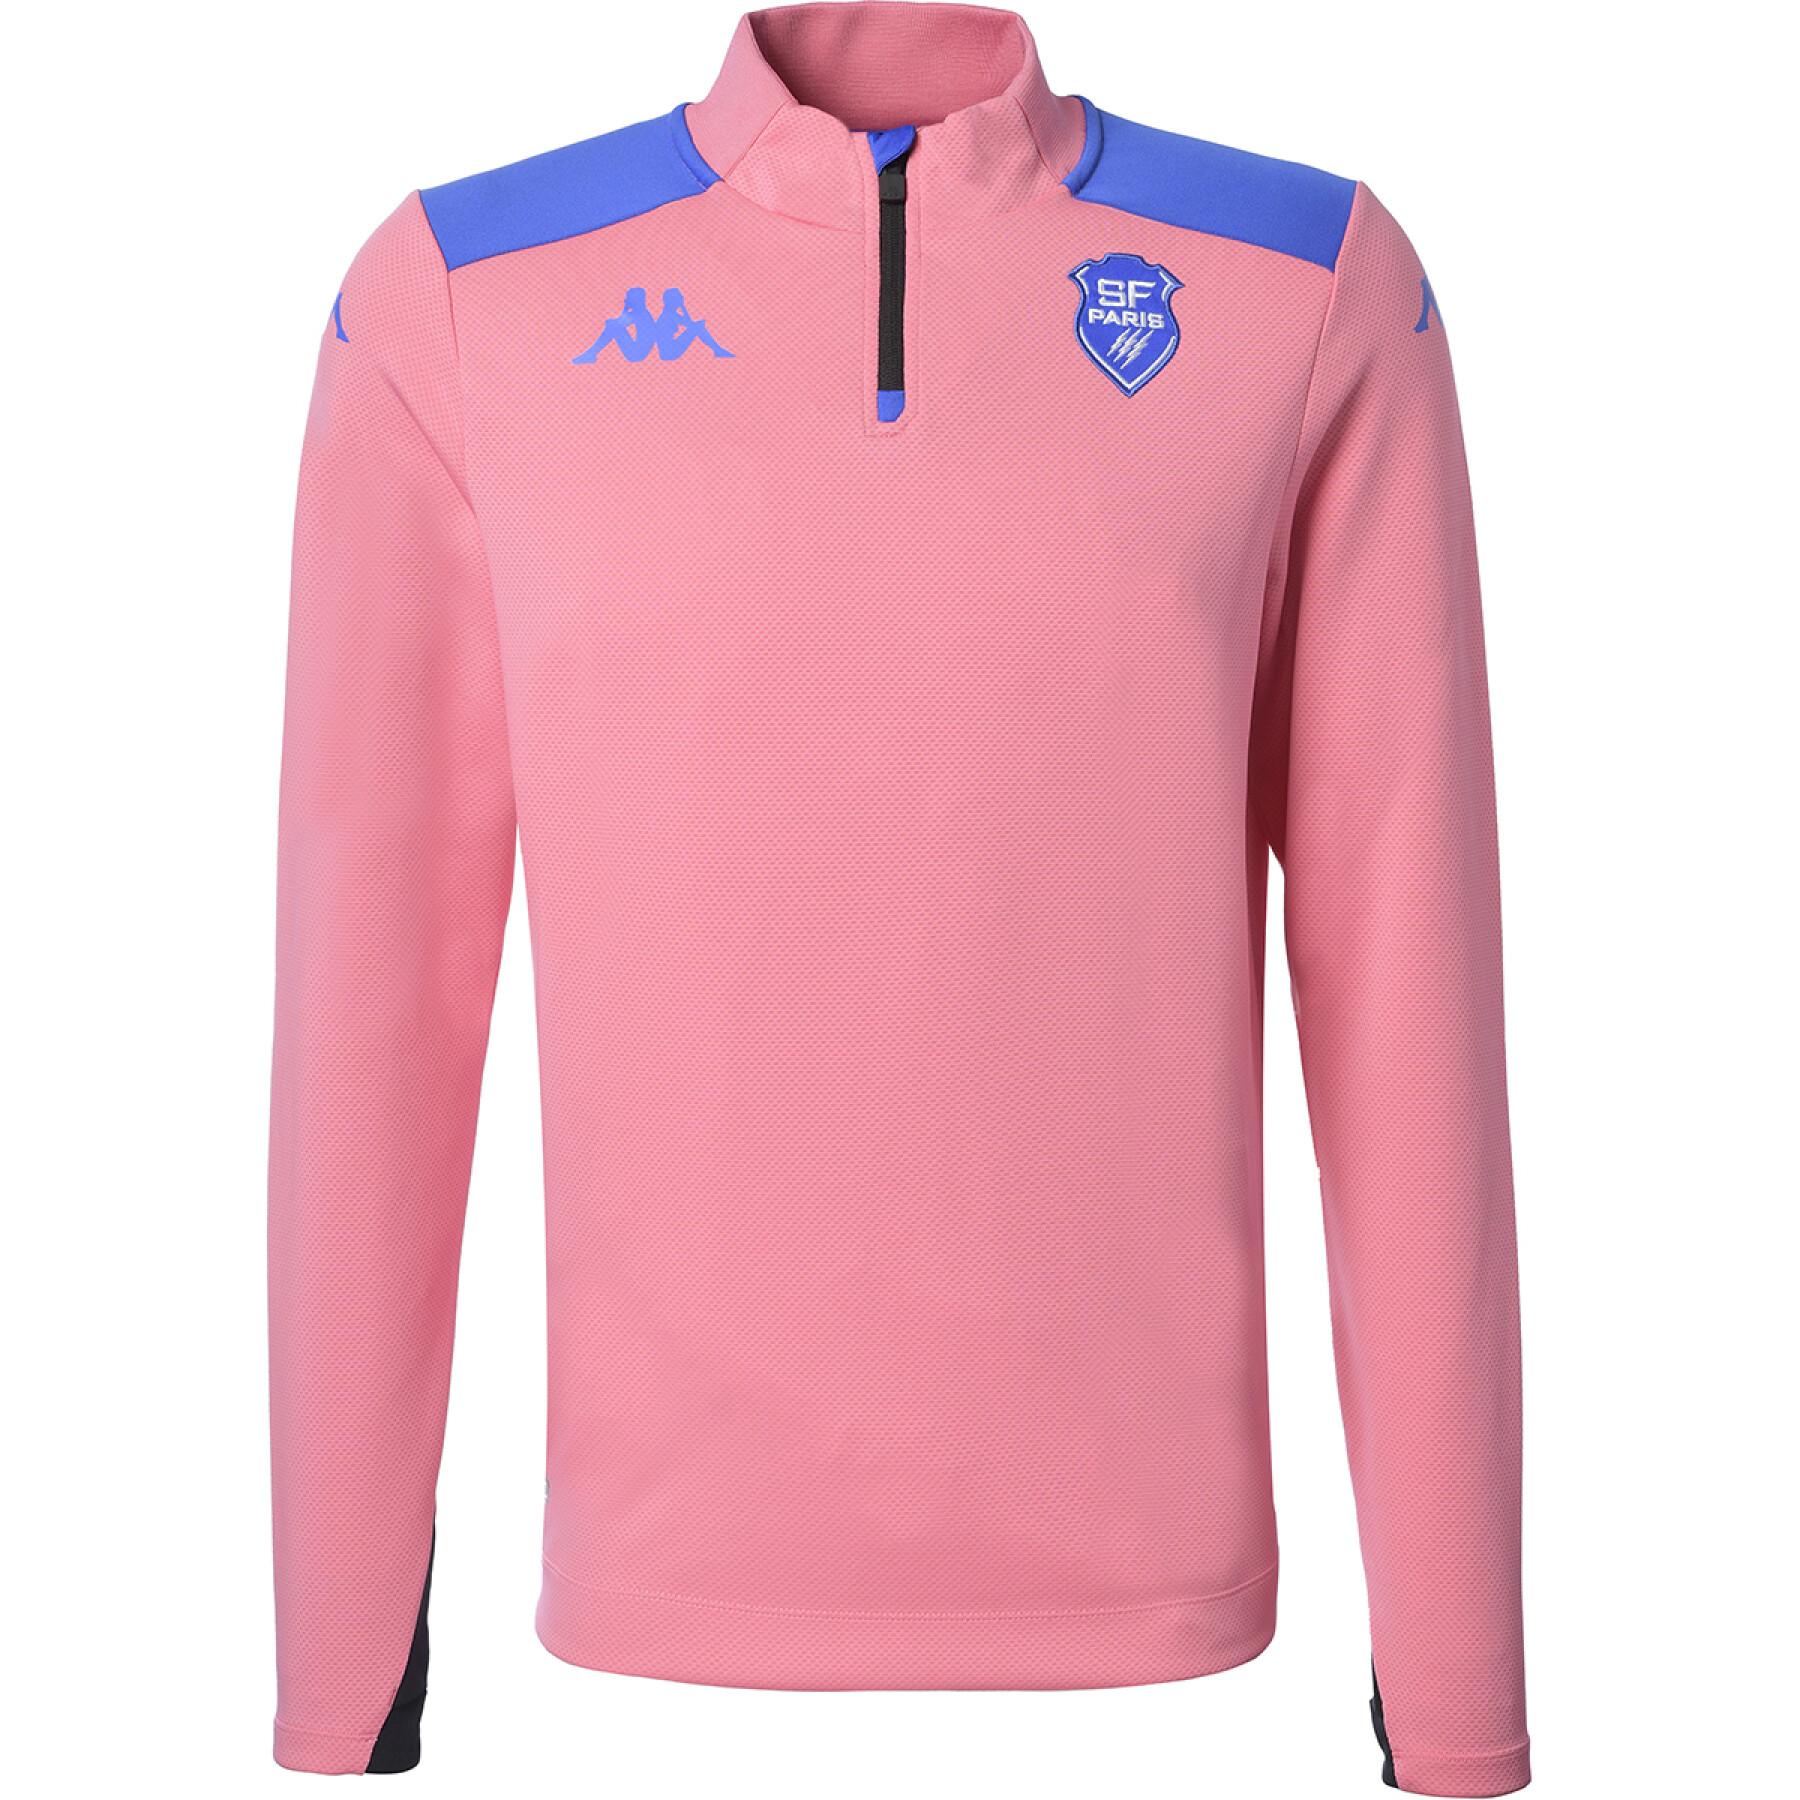 Zip training sweatshirt Stade Français 2021/22 - ablas pro 5